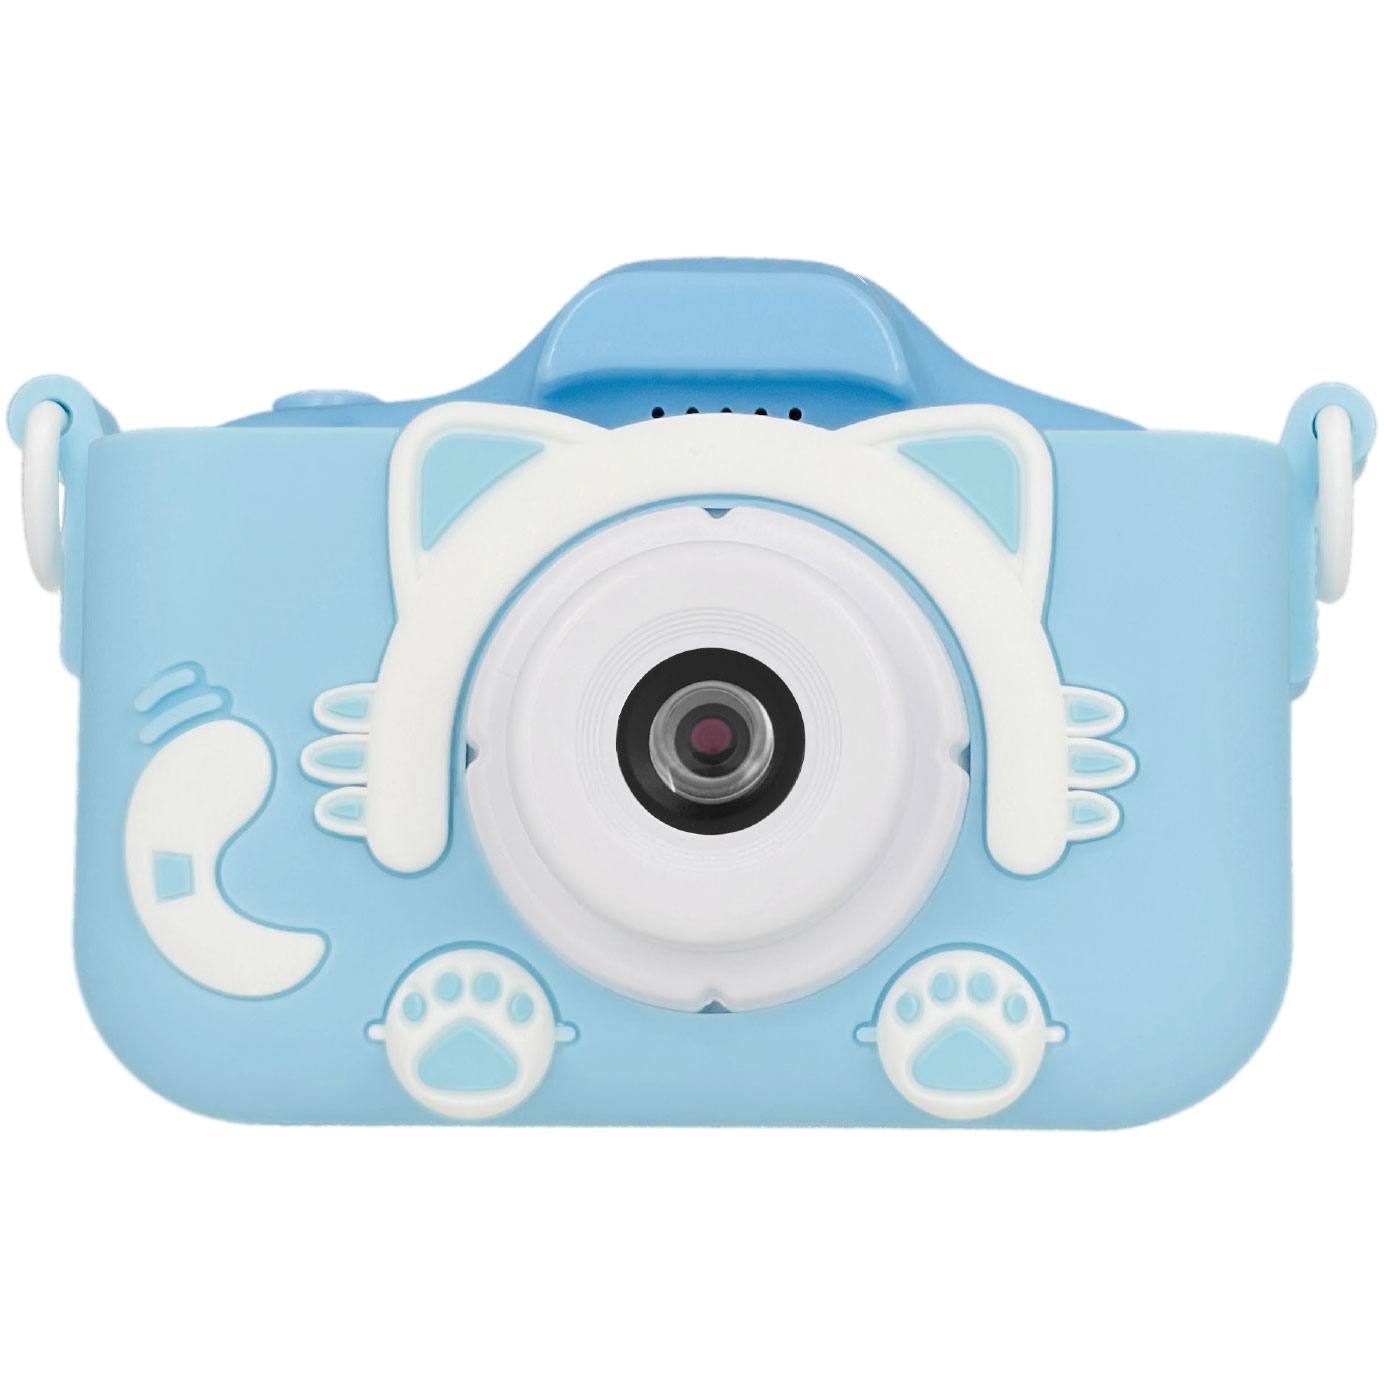 携帯電話・おもちゃスマホ 写真や動画、ゲームもできる キッズカメラTK-Z01BL ブルーBlueMakeシリコンカバー ストラップ 子供用カメラ 安全 おもちゃカメラ バッテリー内蔵 デジタルズーム 動画撮影 タイマー